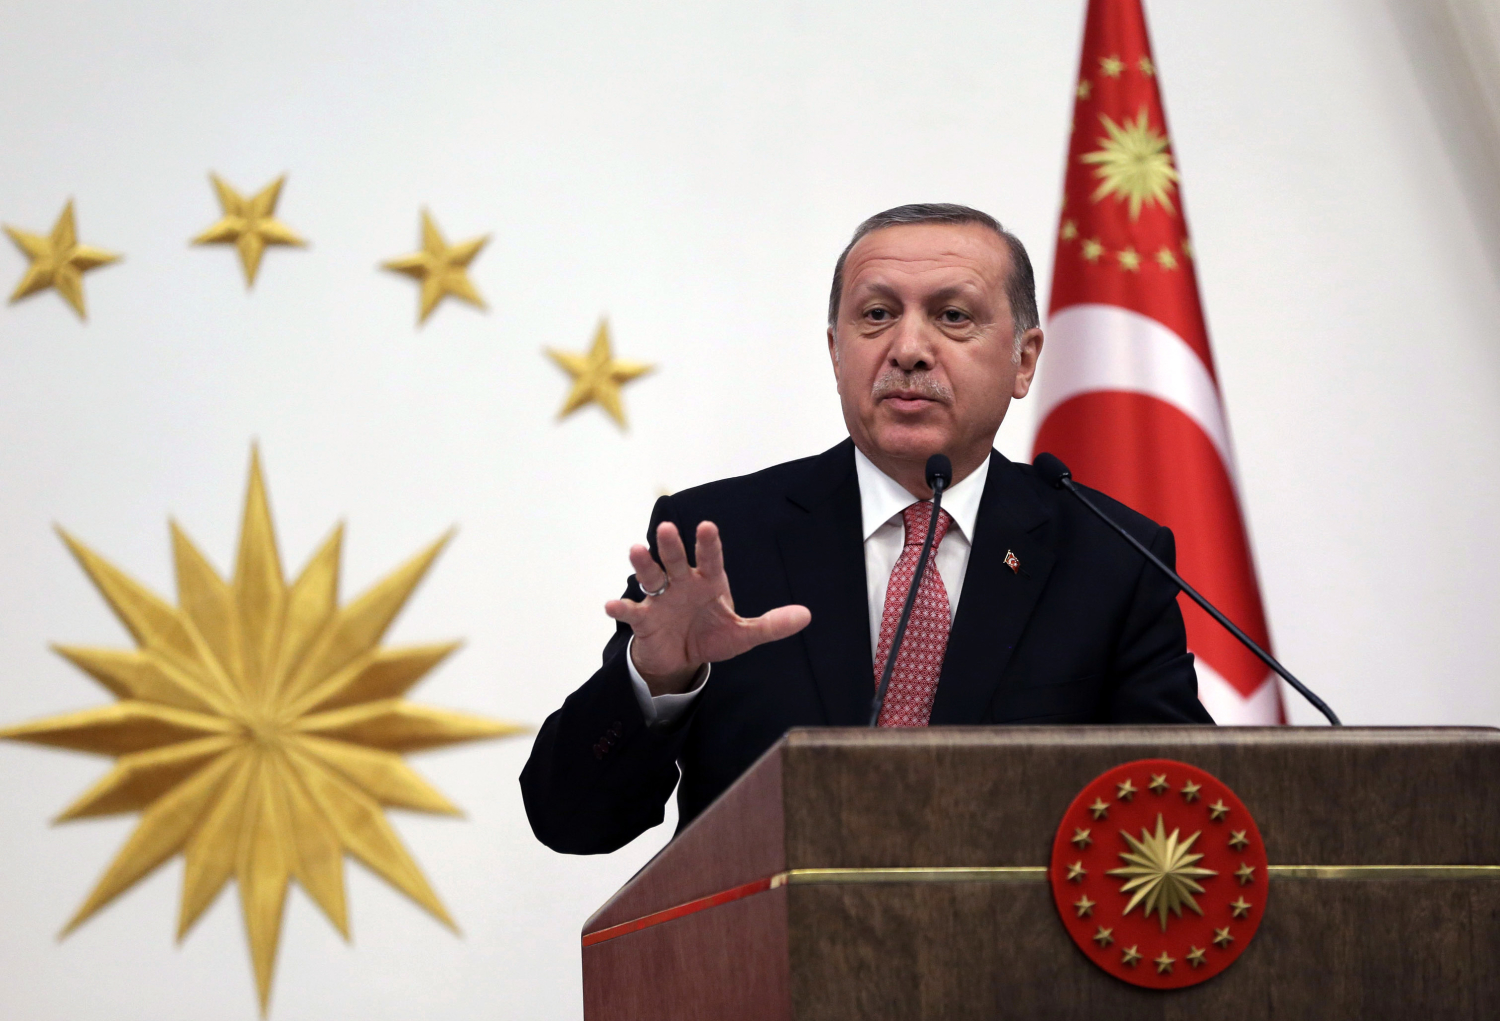 La estrategia de Erdogan para acabar con el partido prokurdo en el Parlamento turco